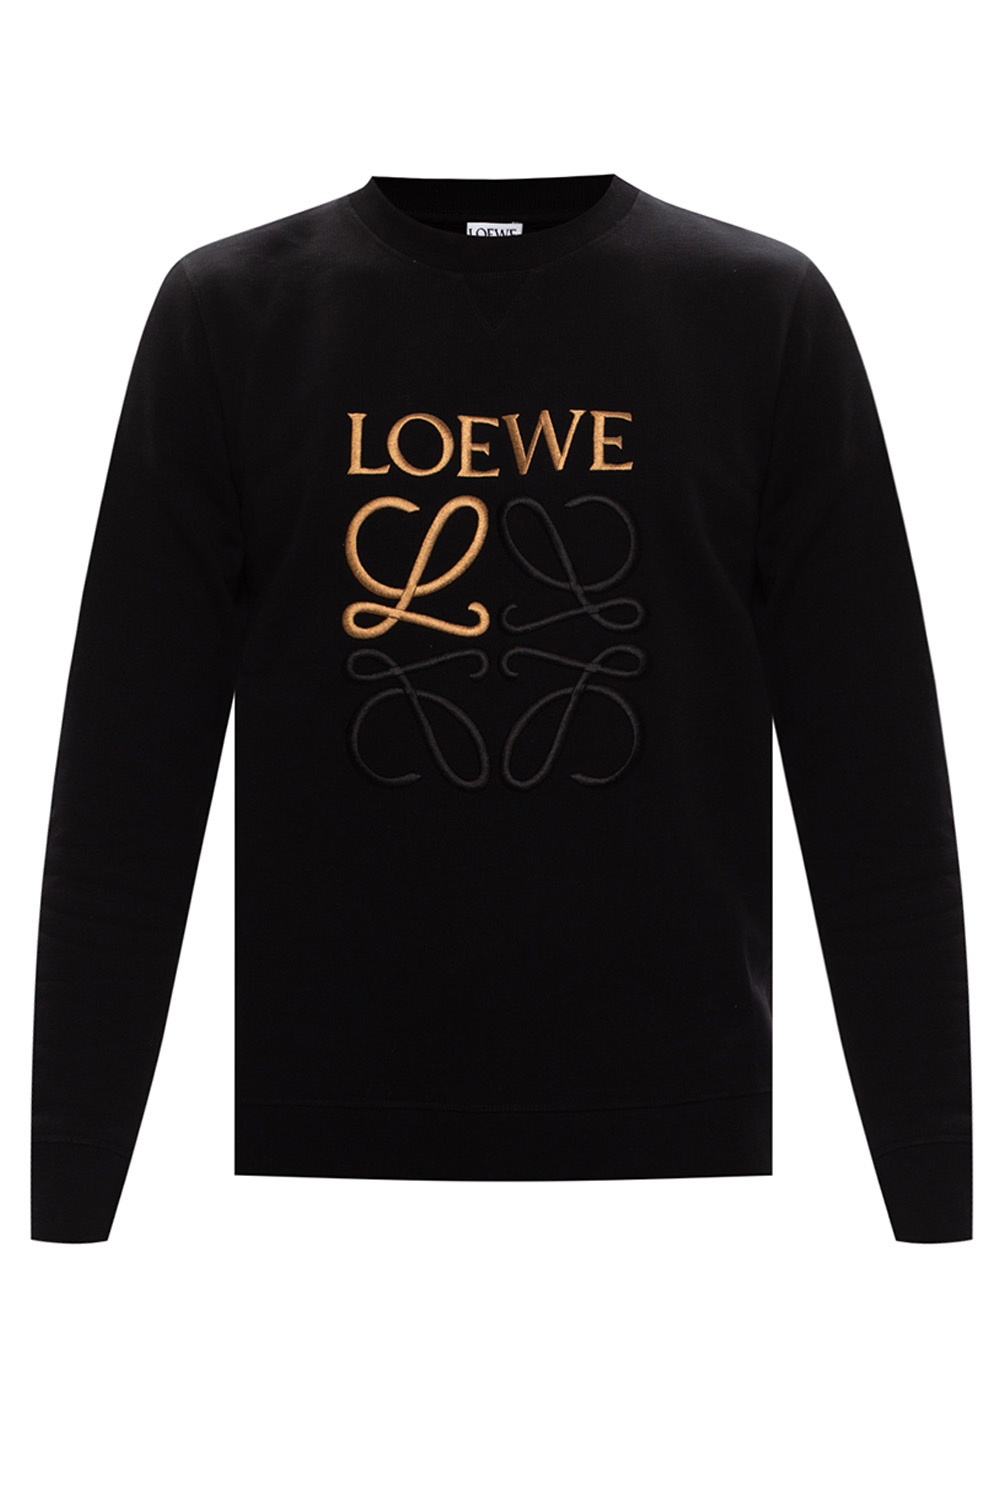 Loewe Sweatshirt with logo | Men's Clothing | Vitkac